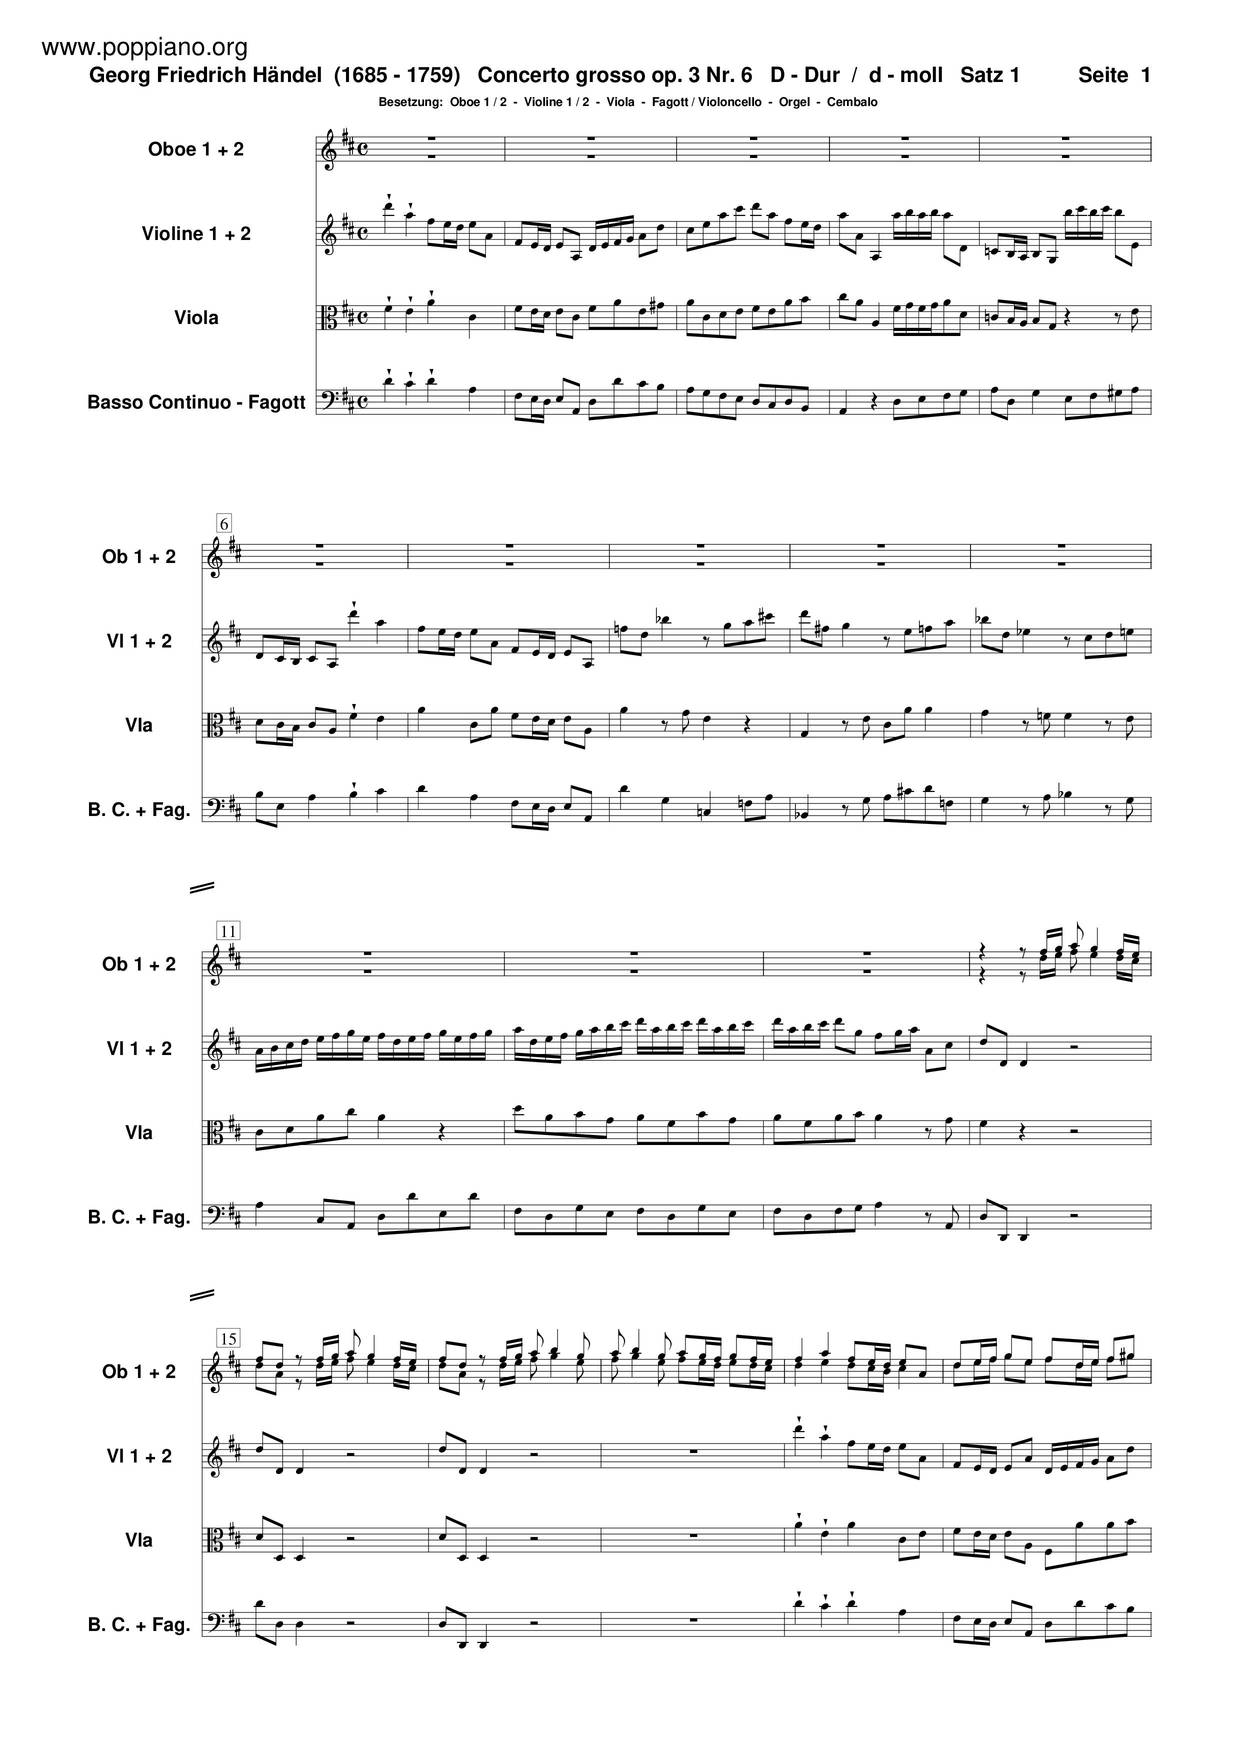 Concerto Grosso In D Major, HWV 317琴谱